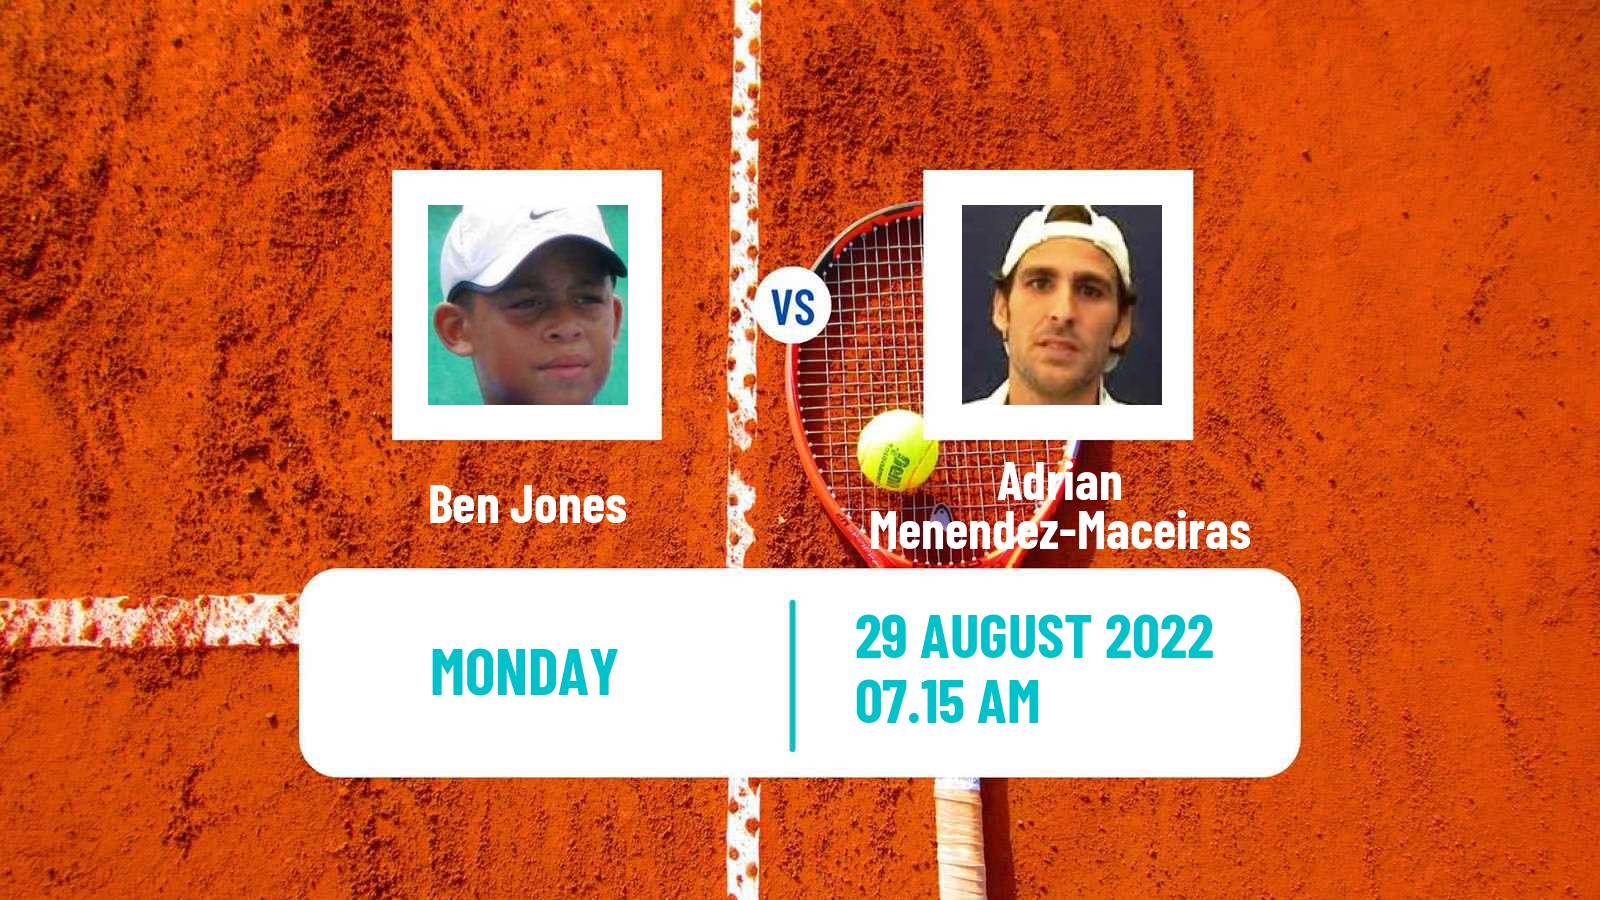 Tennis ATP Challenger Ben Jones - Adrian Menendez-Maceiras